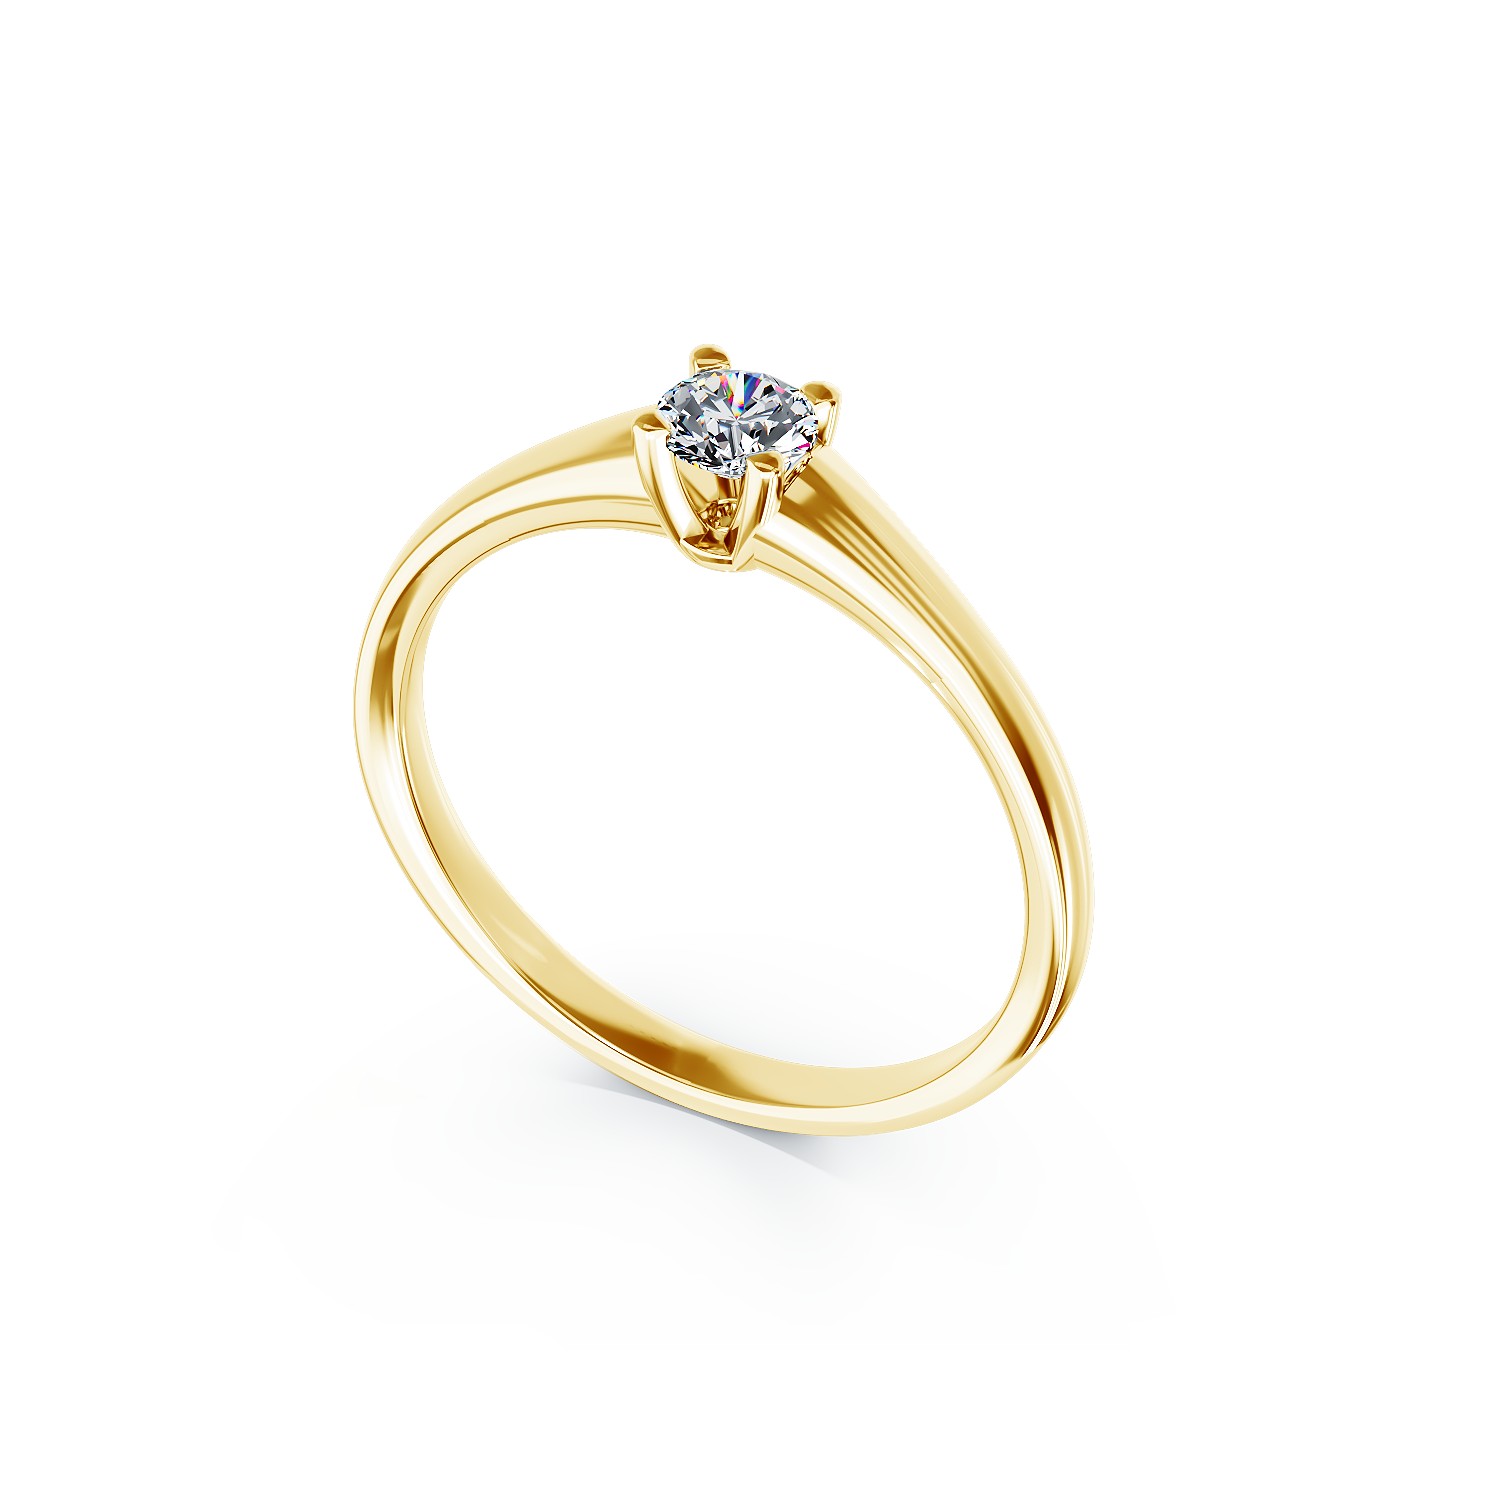 Годежен пръстен от 18K жълто злато с диамант пасианс 0.21ct